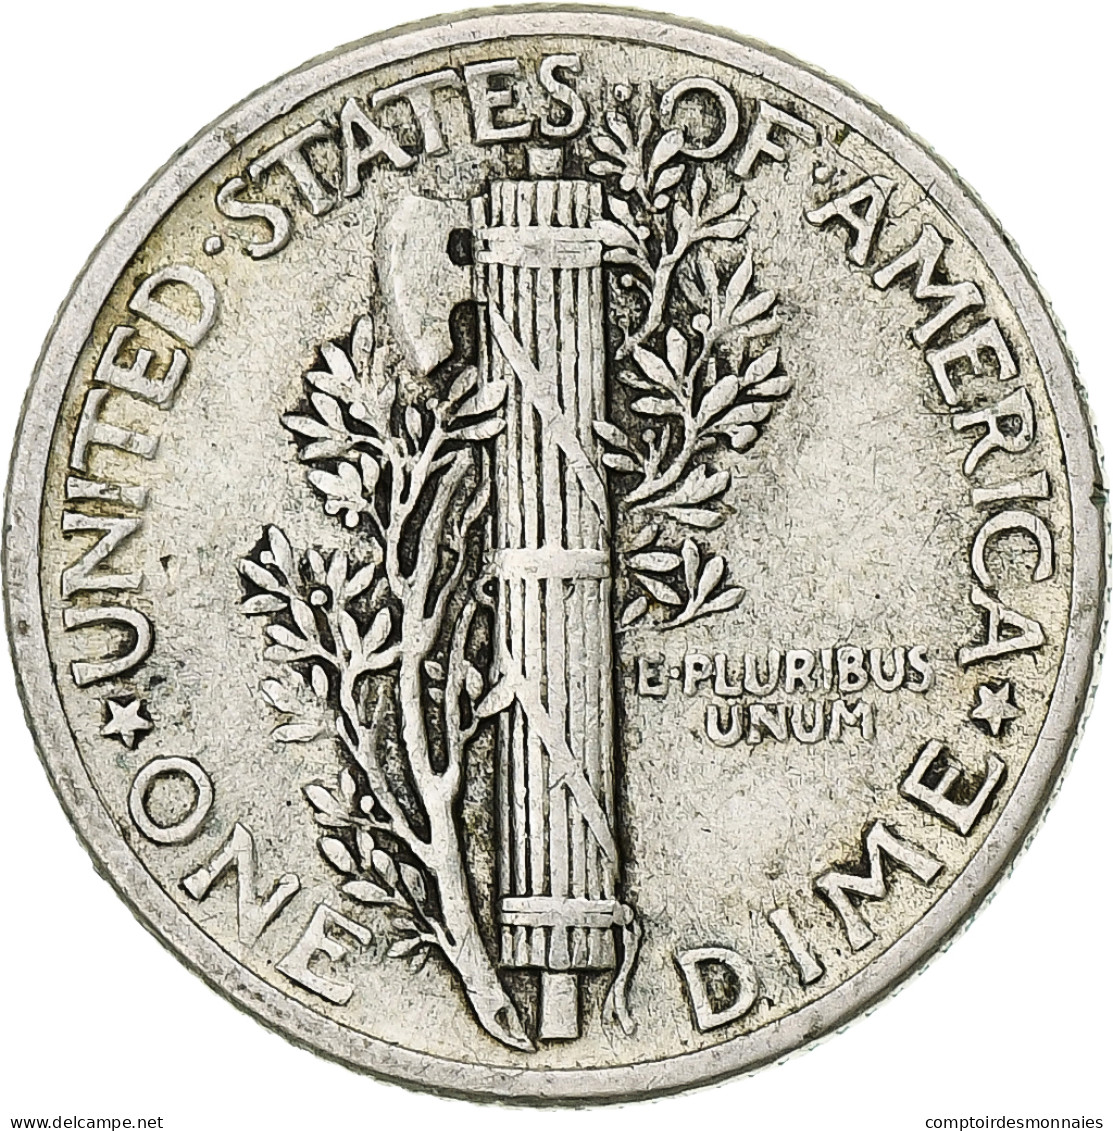 Monnaie, États-Unis, Mercury Dime, Dime, 1941, U.S. Mint, Philadelphie, TTB - 1916-1945: Mercury (Mercure)